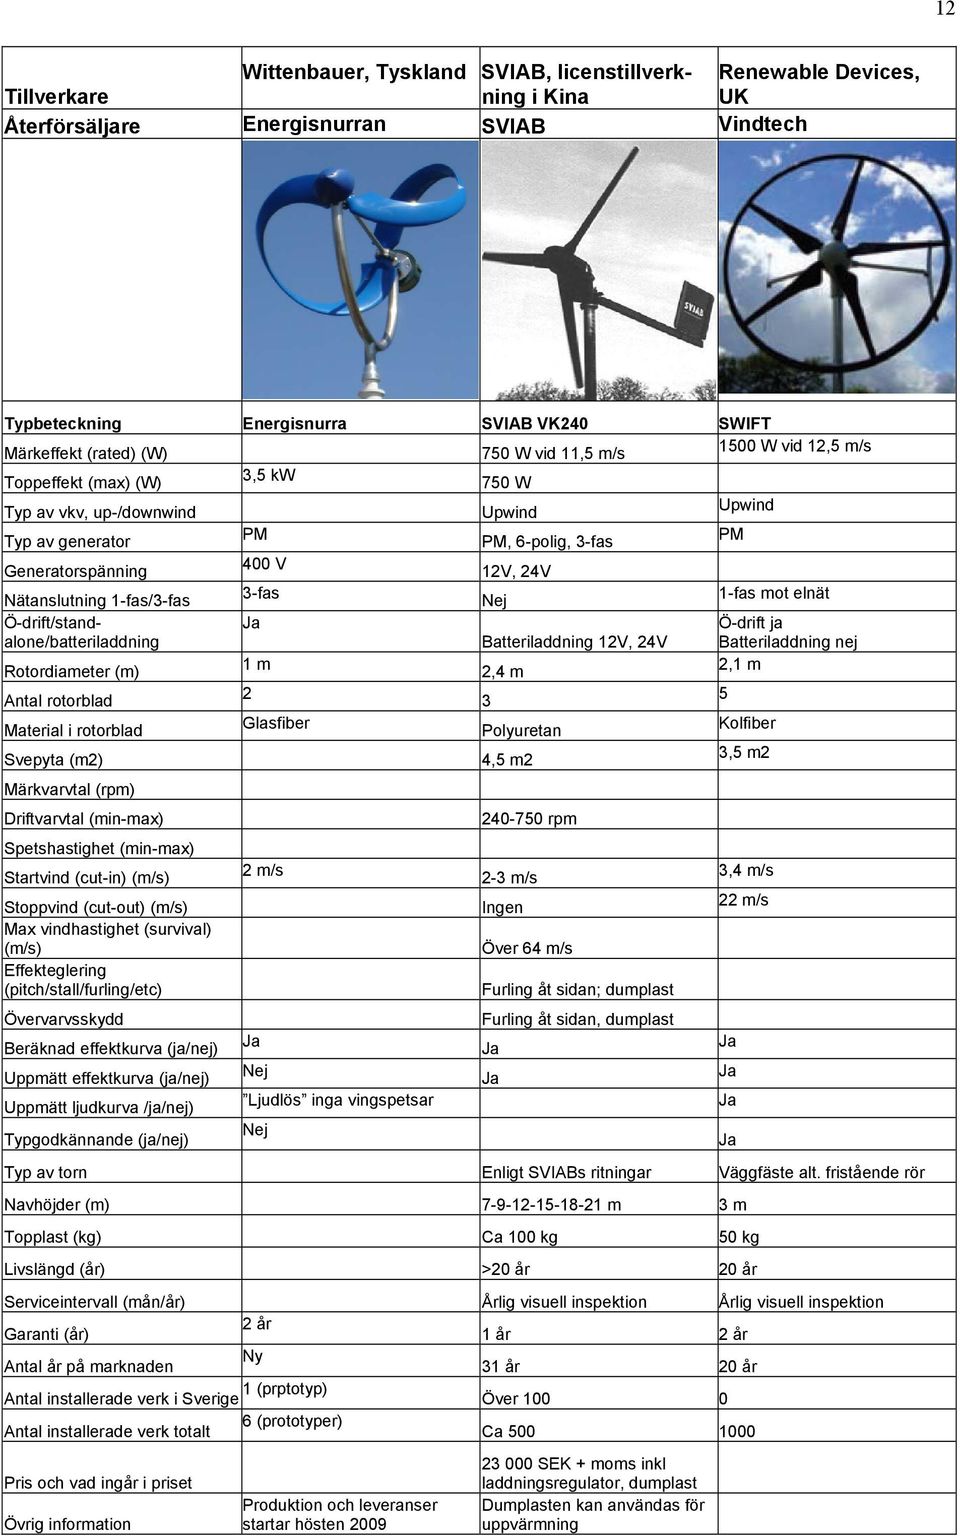 rotorblad 2 3 5 Glasfiber Polyuretan Kolfiber 4,5 m2 3,5 m2 (m/s) Beräknad effektkurva (ja/nej) Uppmätt effektkurva (ja/nej) Uppmätt ljudkurva /ja/nej) Typgodkännande (ja/nej) 2 m/s Ljudlös inga